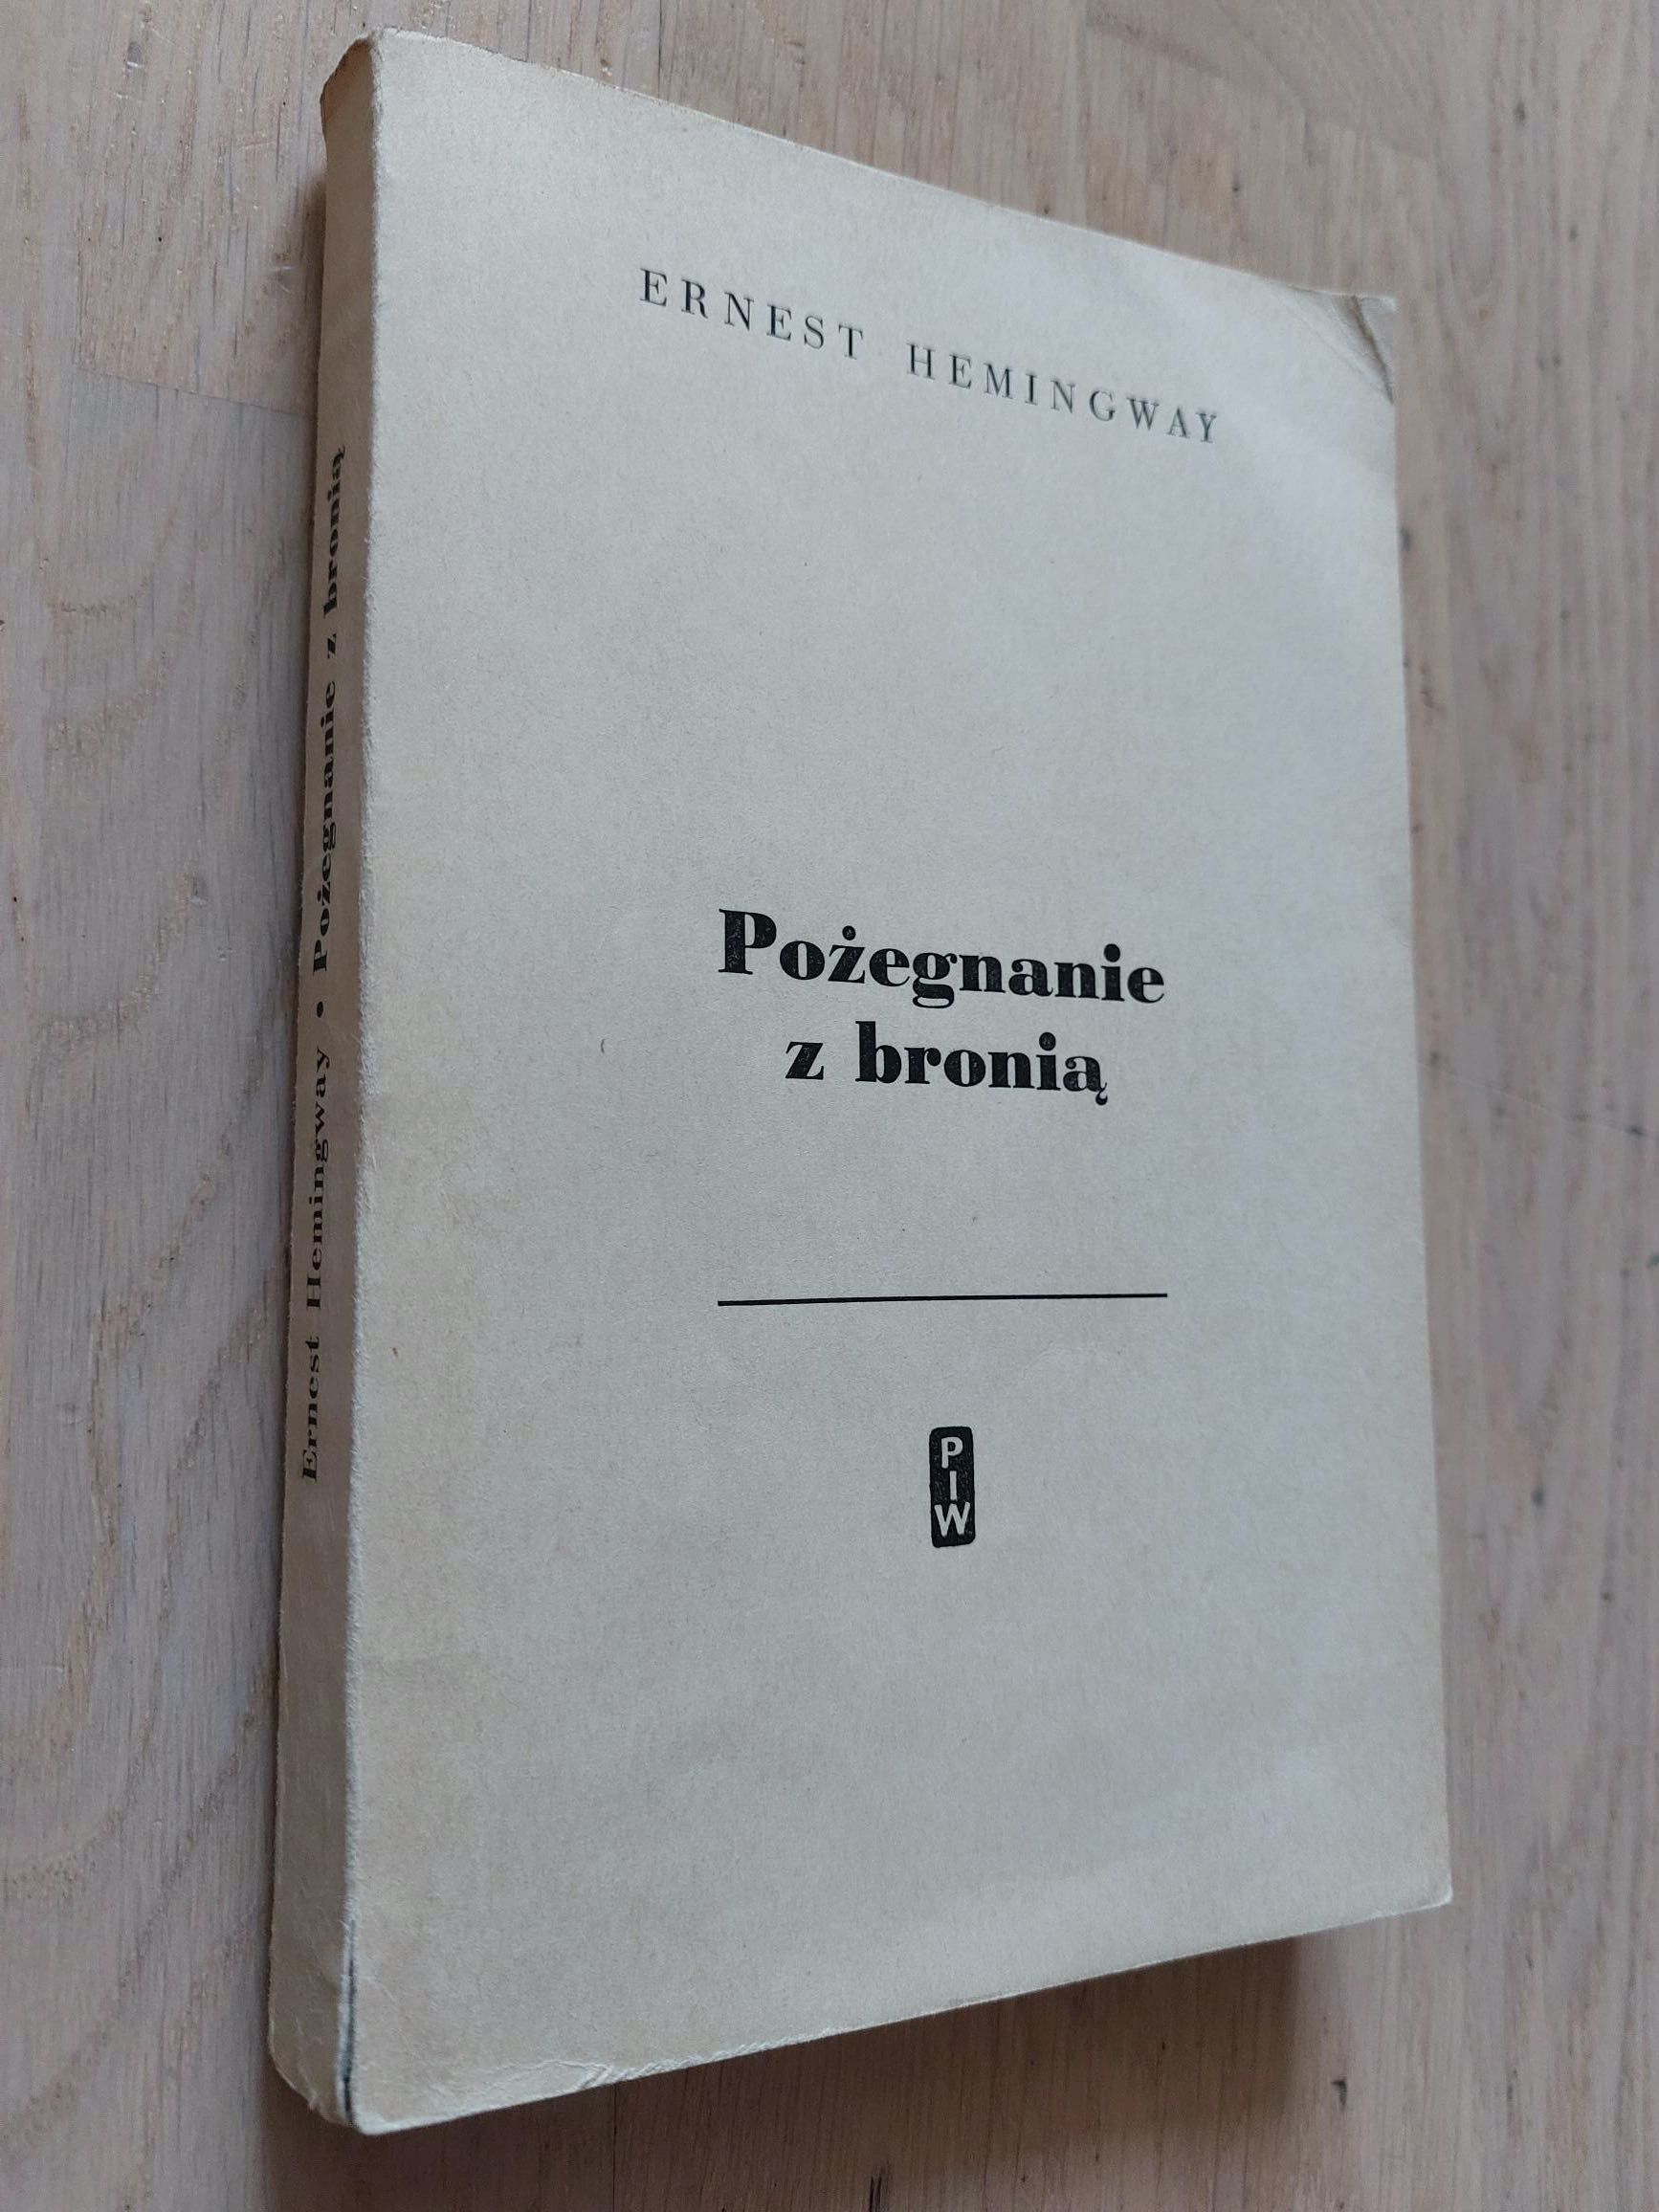 Ernest Hemingway, Pożegnanie z bronią, PIW 1957